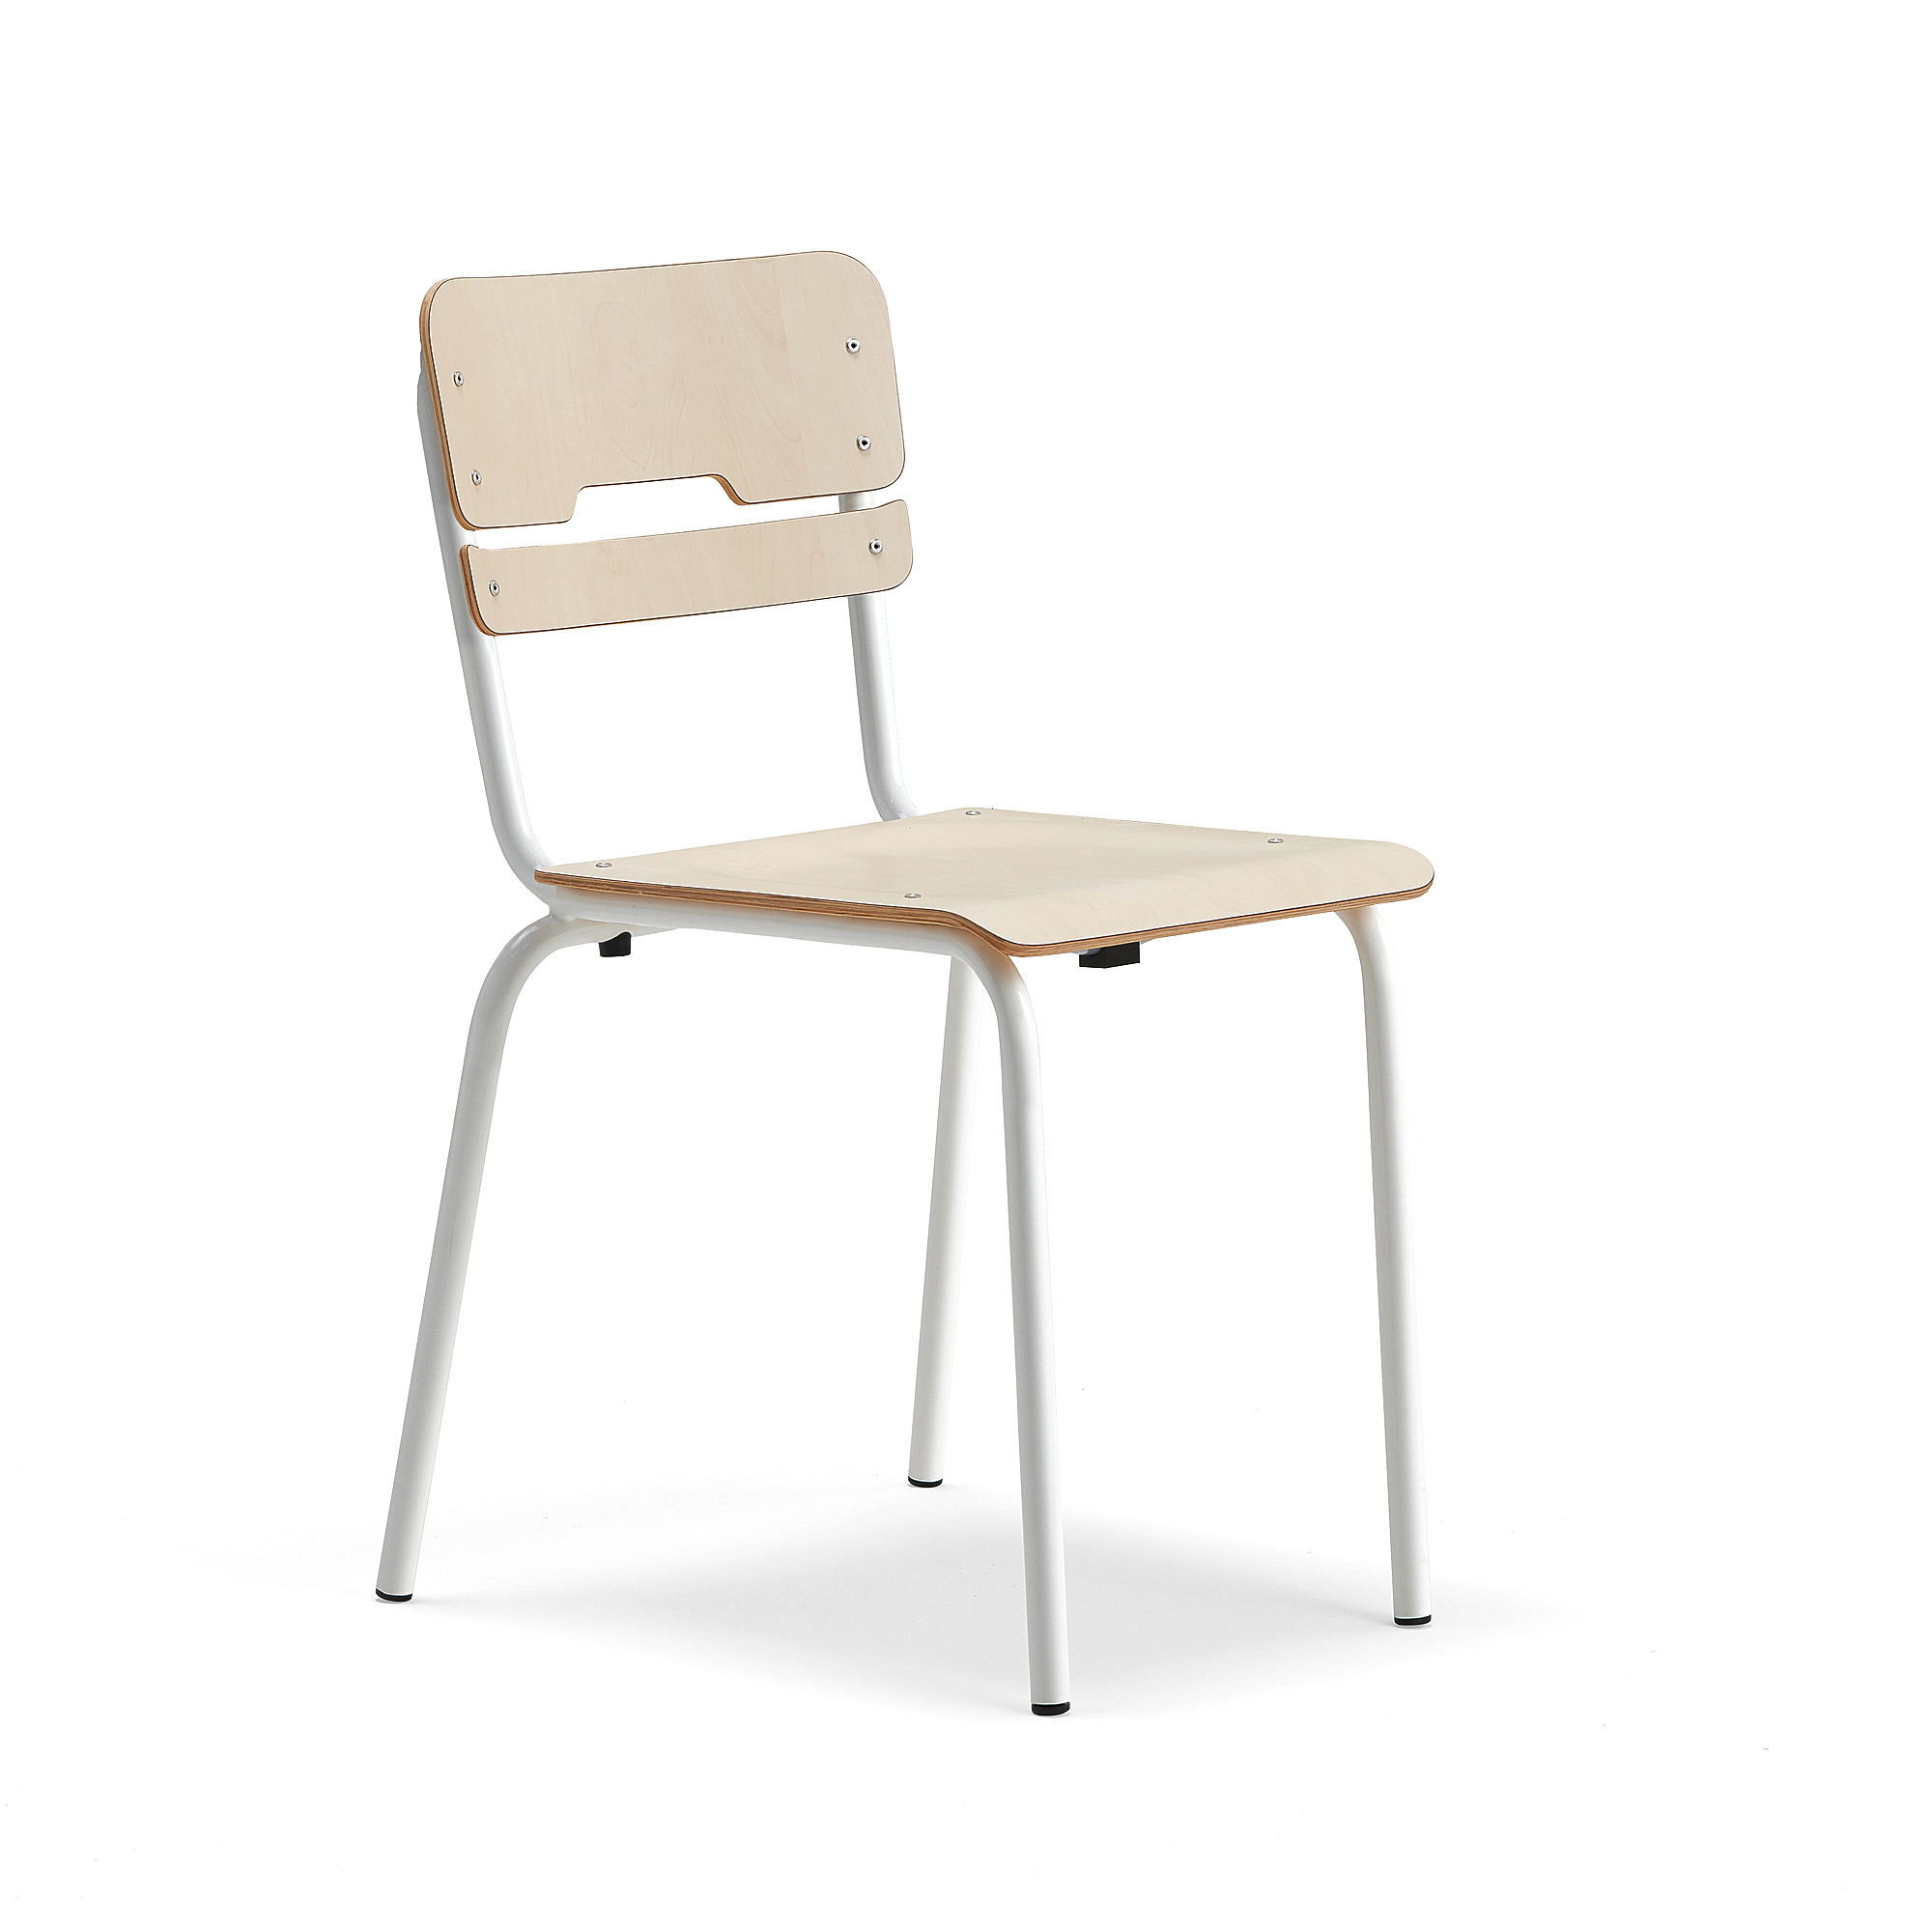 Levně Školní židle SCIENTIA, sedák 390x390 mm, výška 460 mm, bílá/bříza